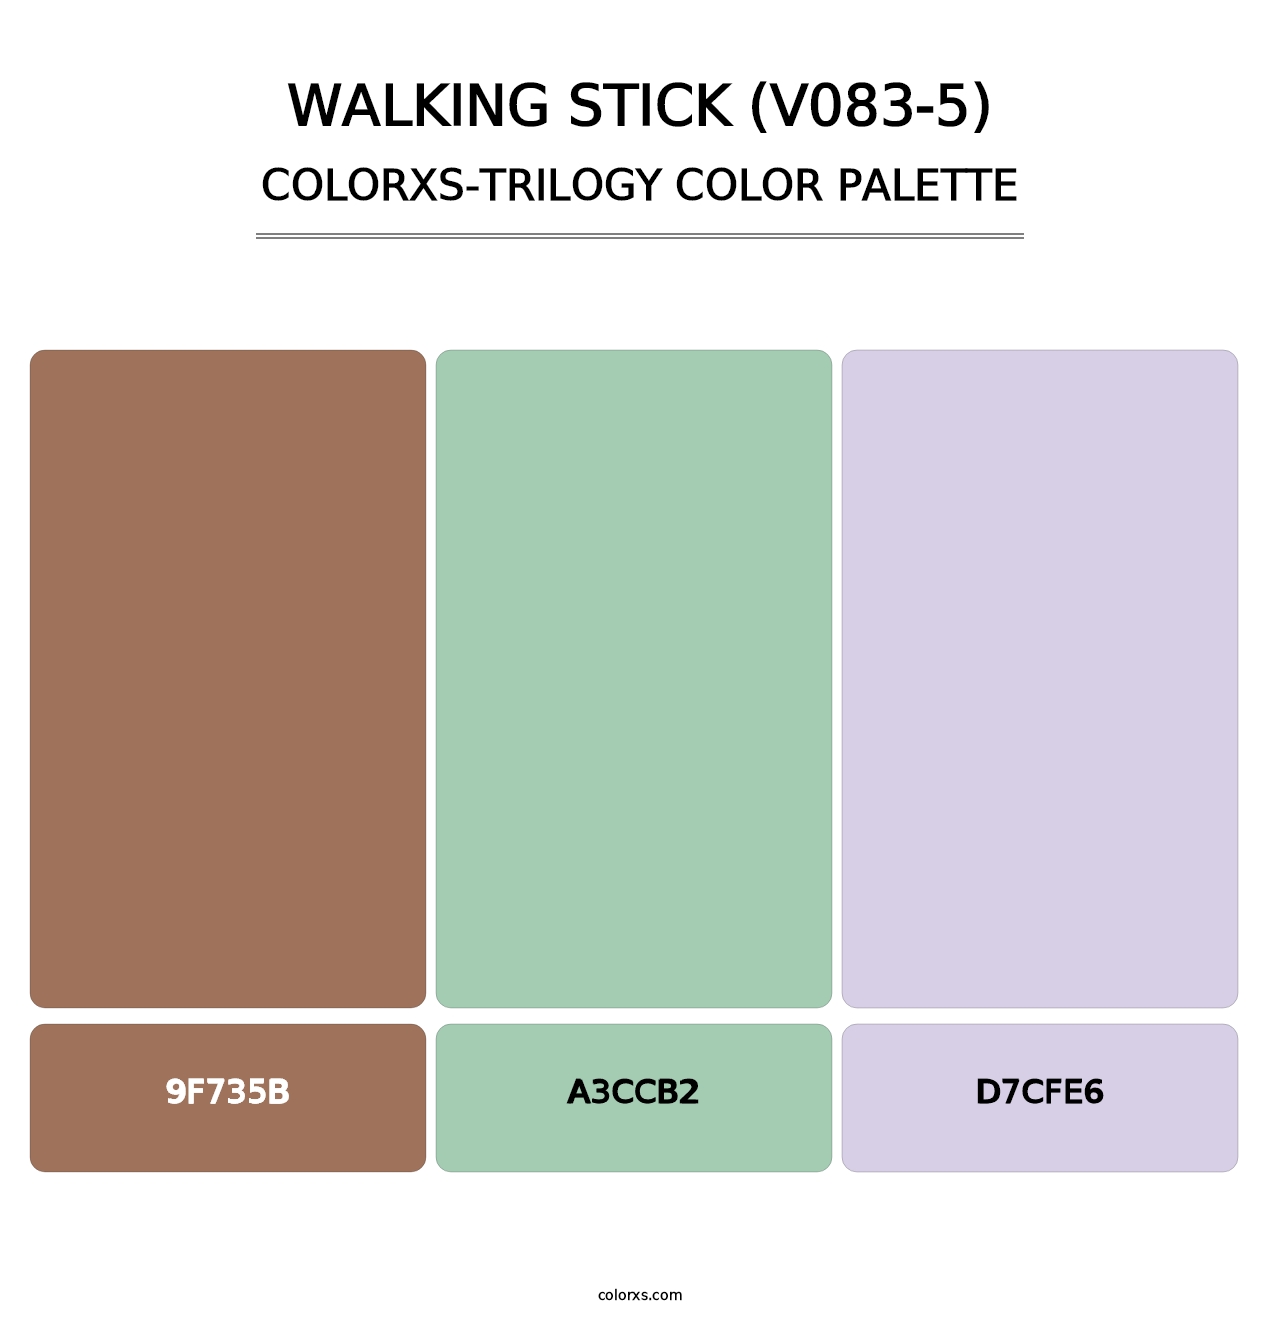 Walking Stick (V083-5) - Colorxs Trilogy Palette